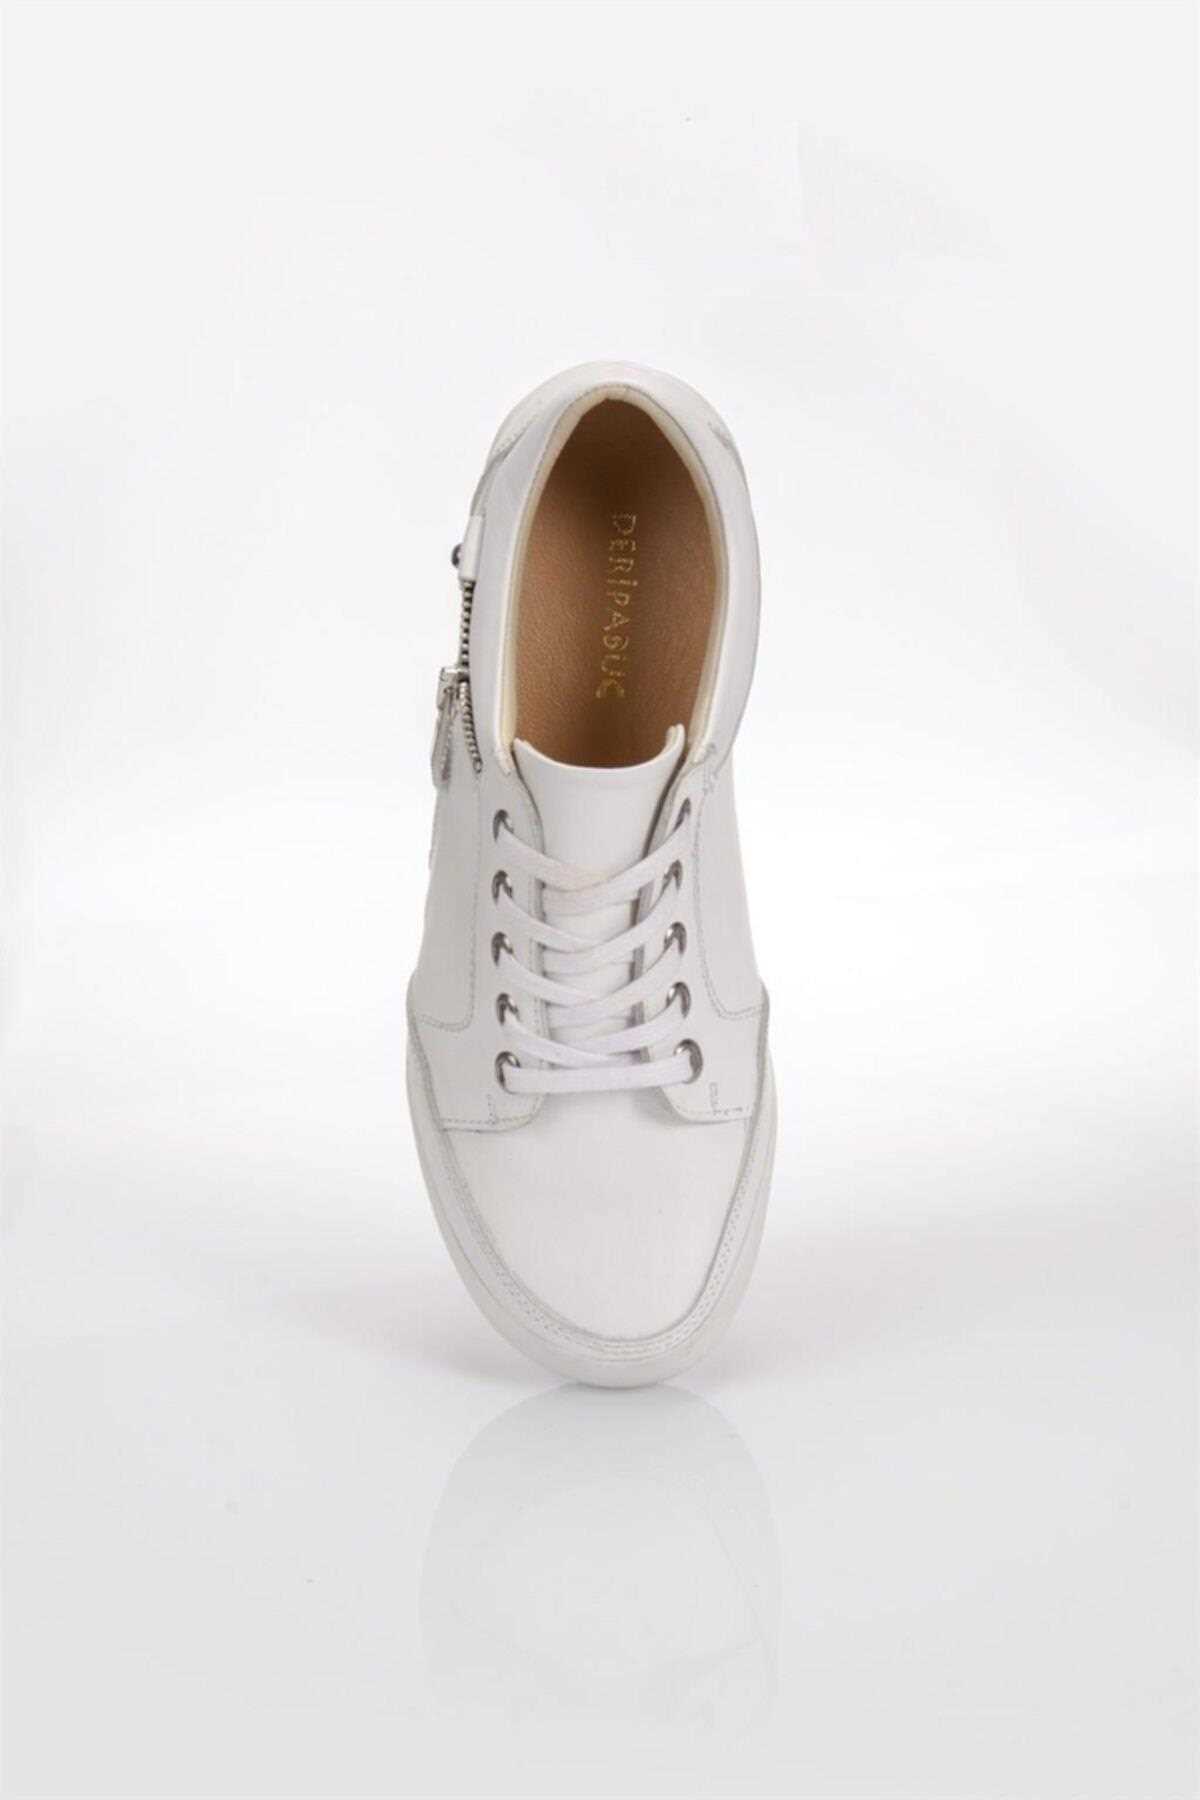 خرید پستی کفش روزمره زنانه شیک برند Deripabuc رنگ سفید ty457706